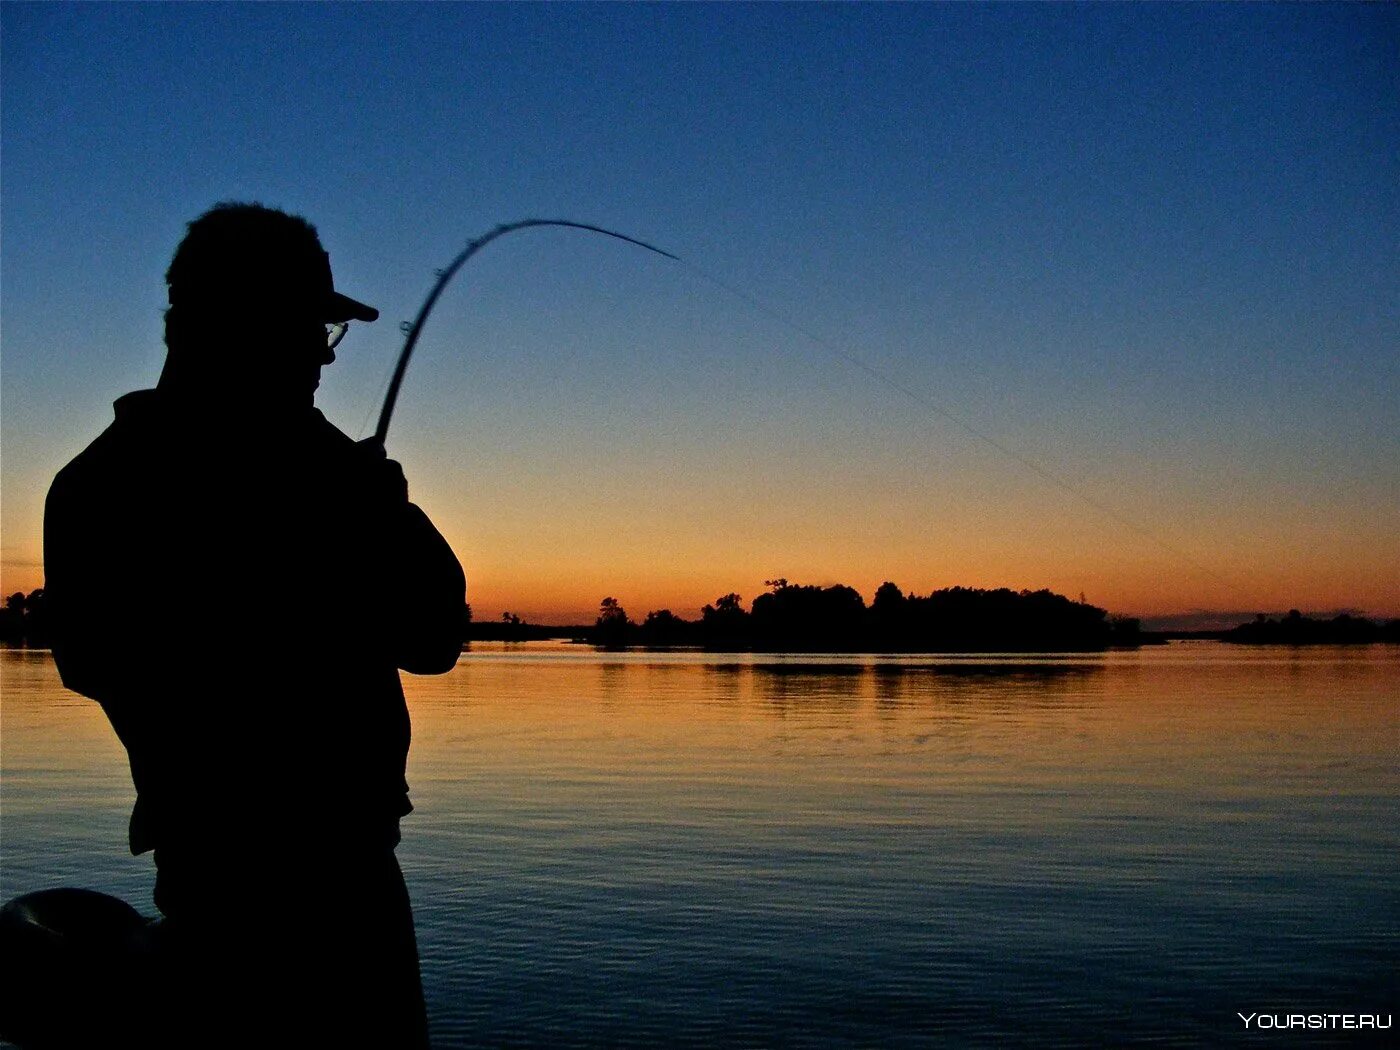 Рыбалка. Рыбак со спиннингом. Рыбак с удочкой. Ночная рыбалка. Ловить рыбу удочкой во сне для женщины